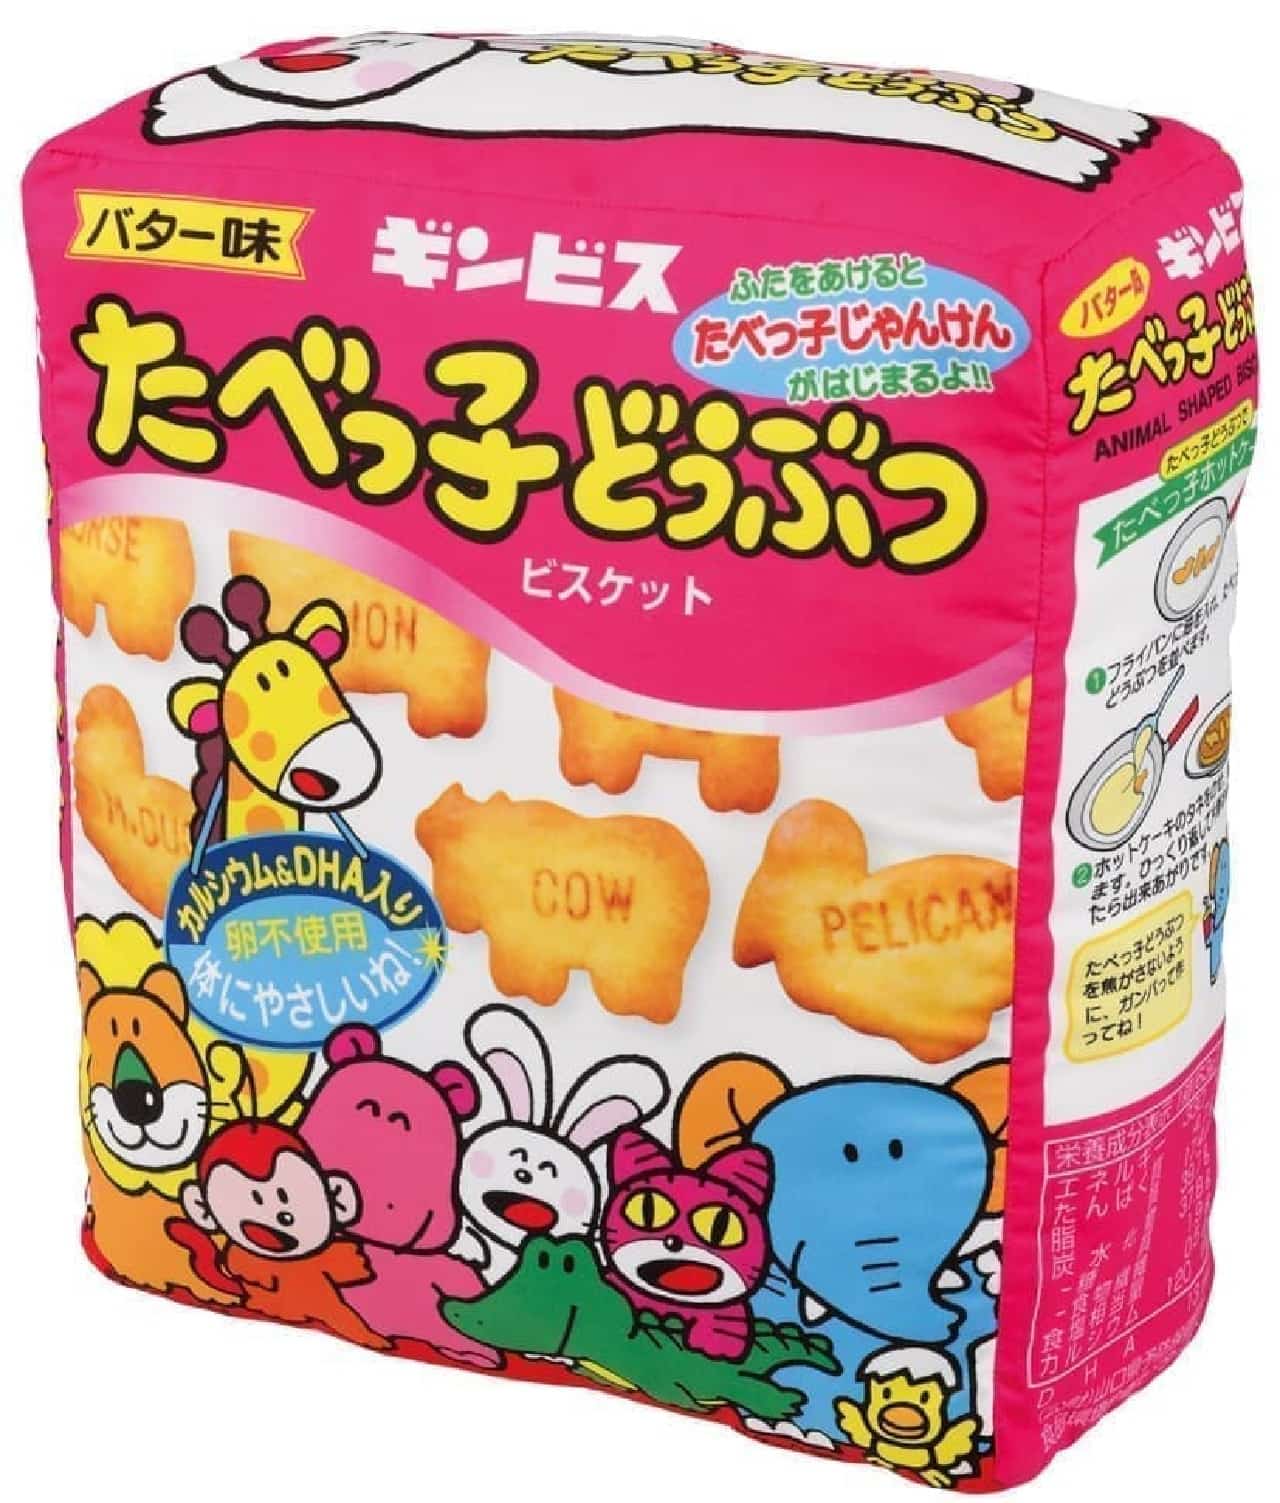 Ichiban Kuji Ginbis Tabekko Animal Collection full of sweets